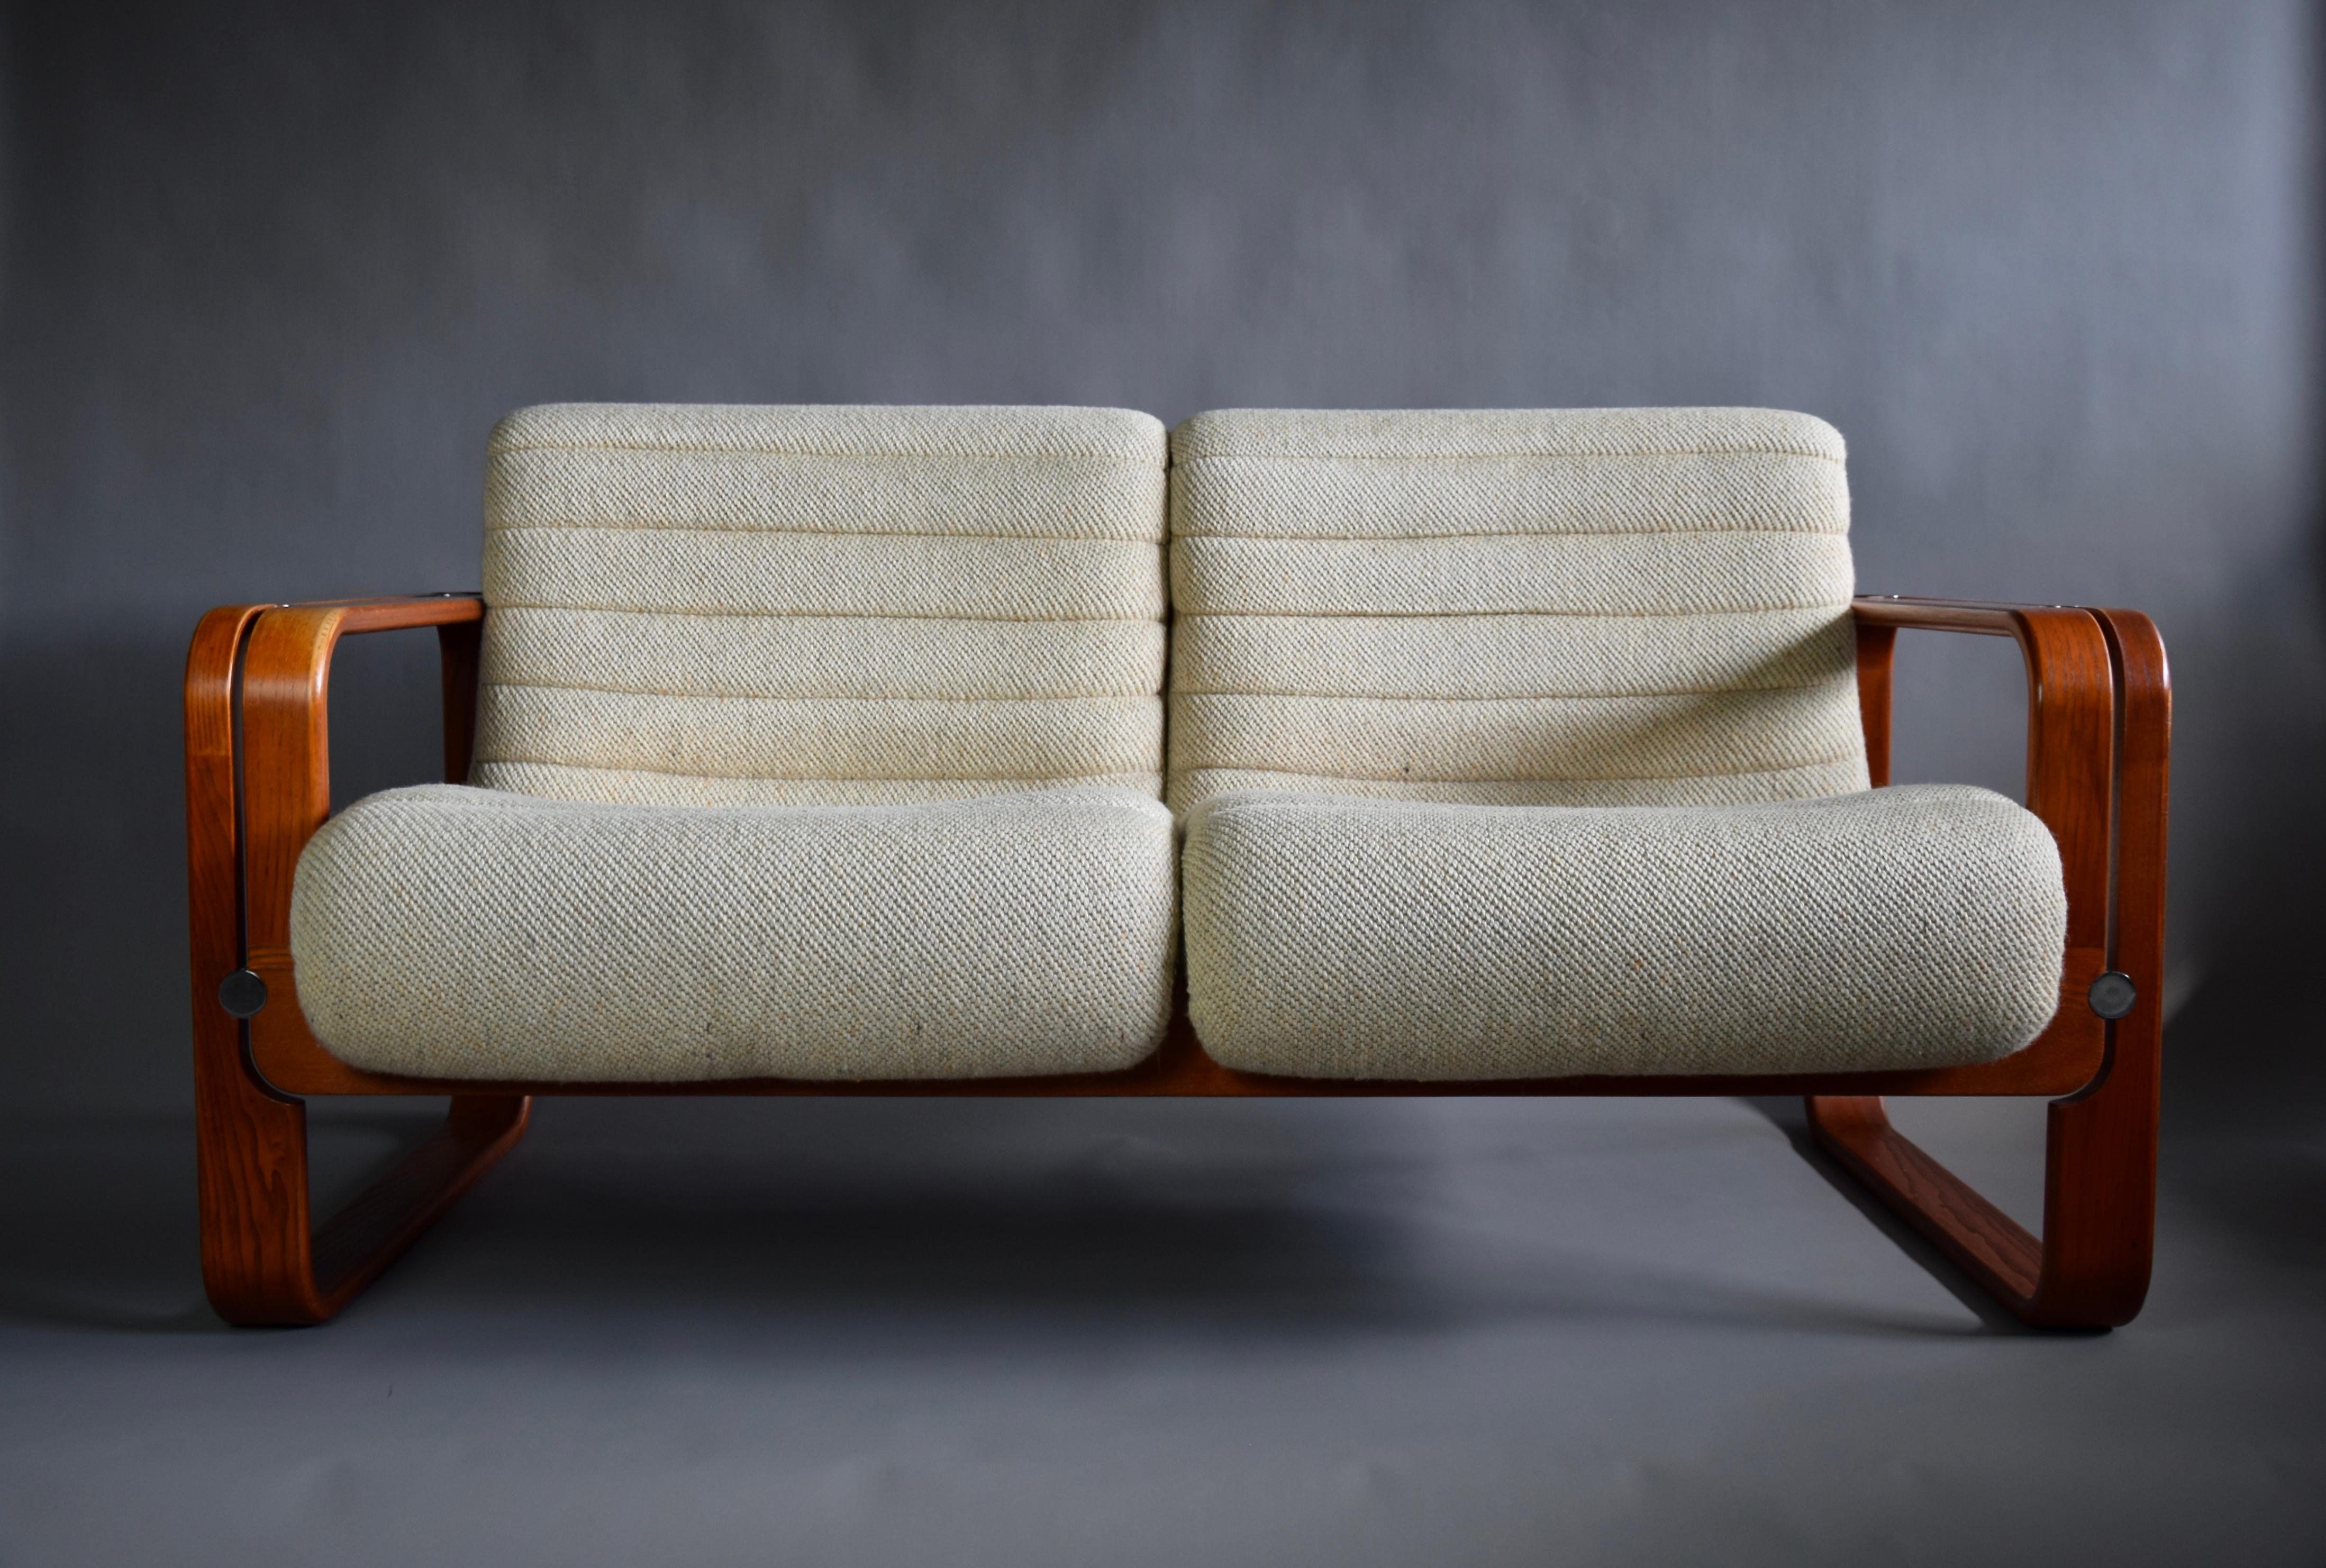 Wunderschönes Zweisitzer-Sofa aus den 1970er Jahren mit seiner originalen ecrufarbenen Polsterung in tollem Zustand. Entworfen von Martin Stoll für den Schweizer Möbelhersteller Giroflex, der für seine zukunftsweisende und hervorragende Qualität